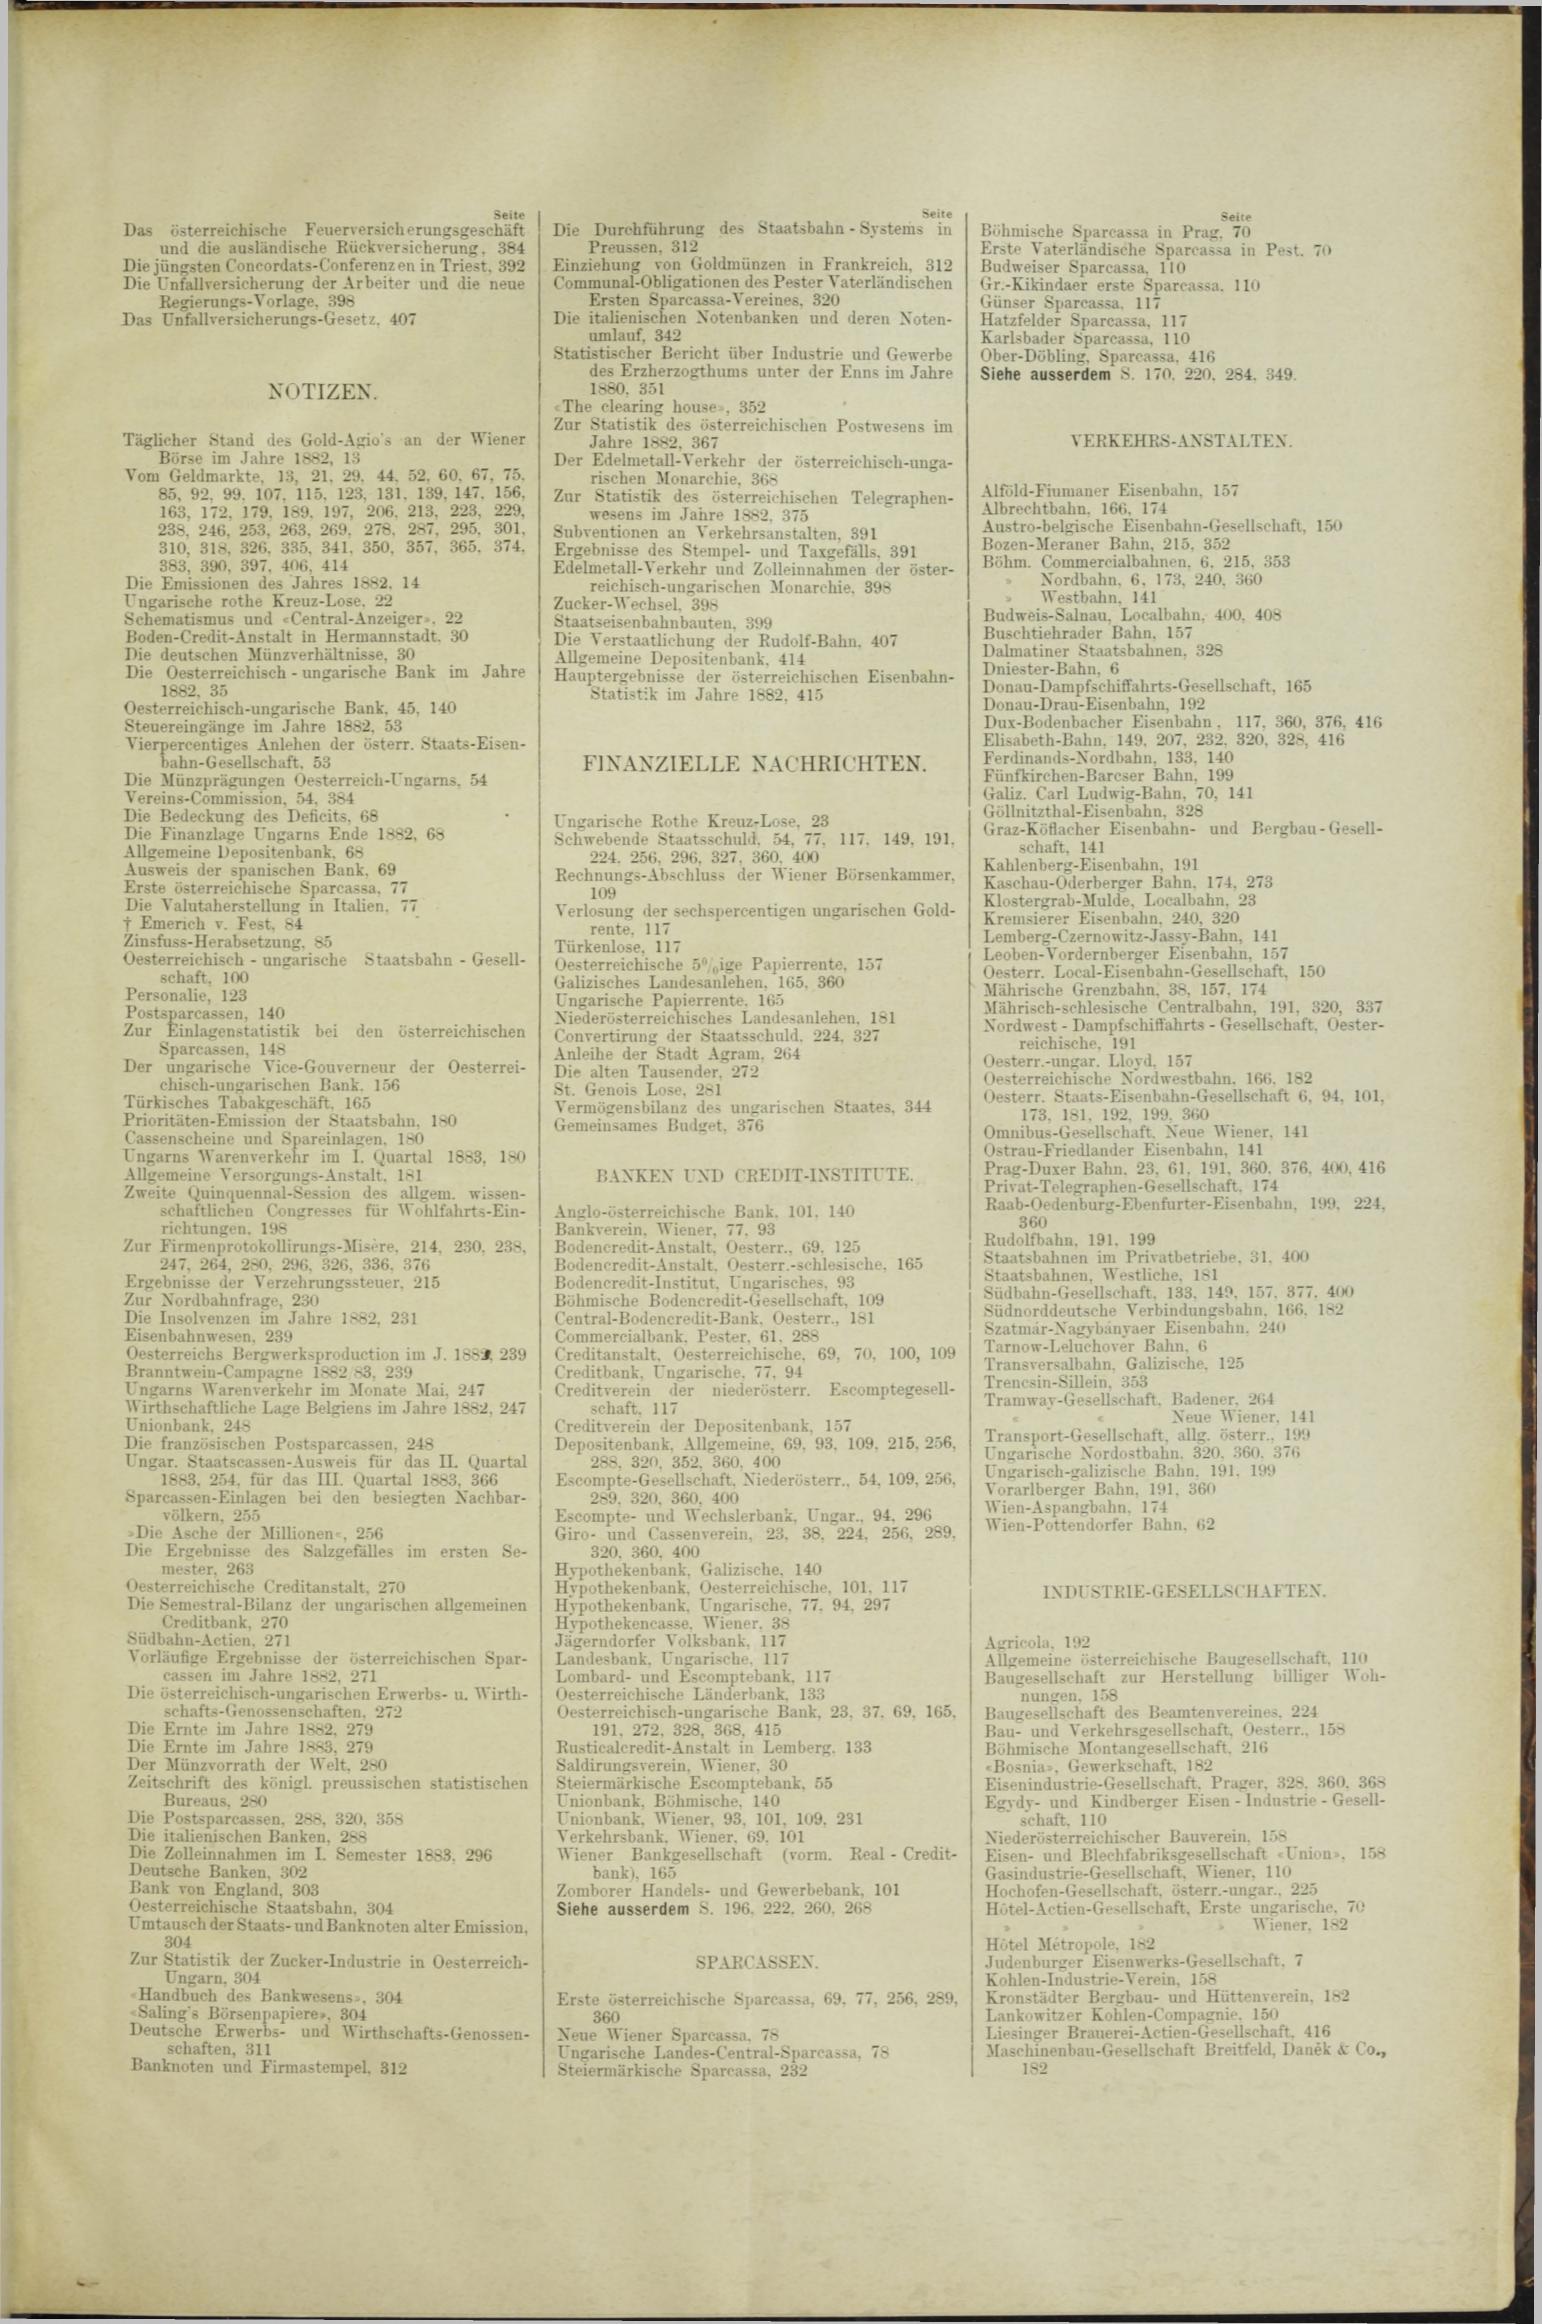 Der Tresor 06.09.1883 - Seite 11